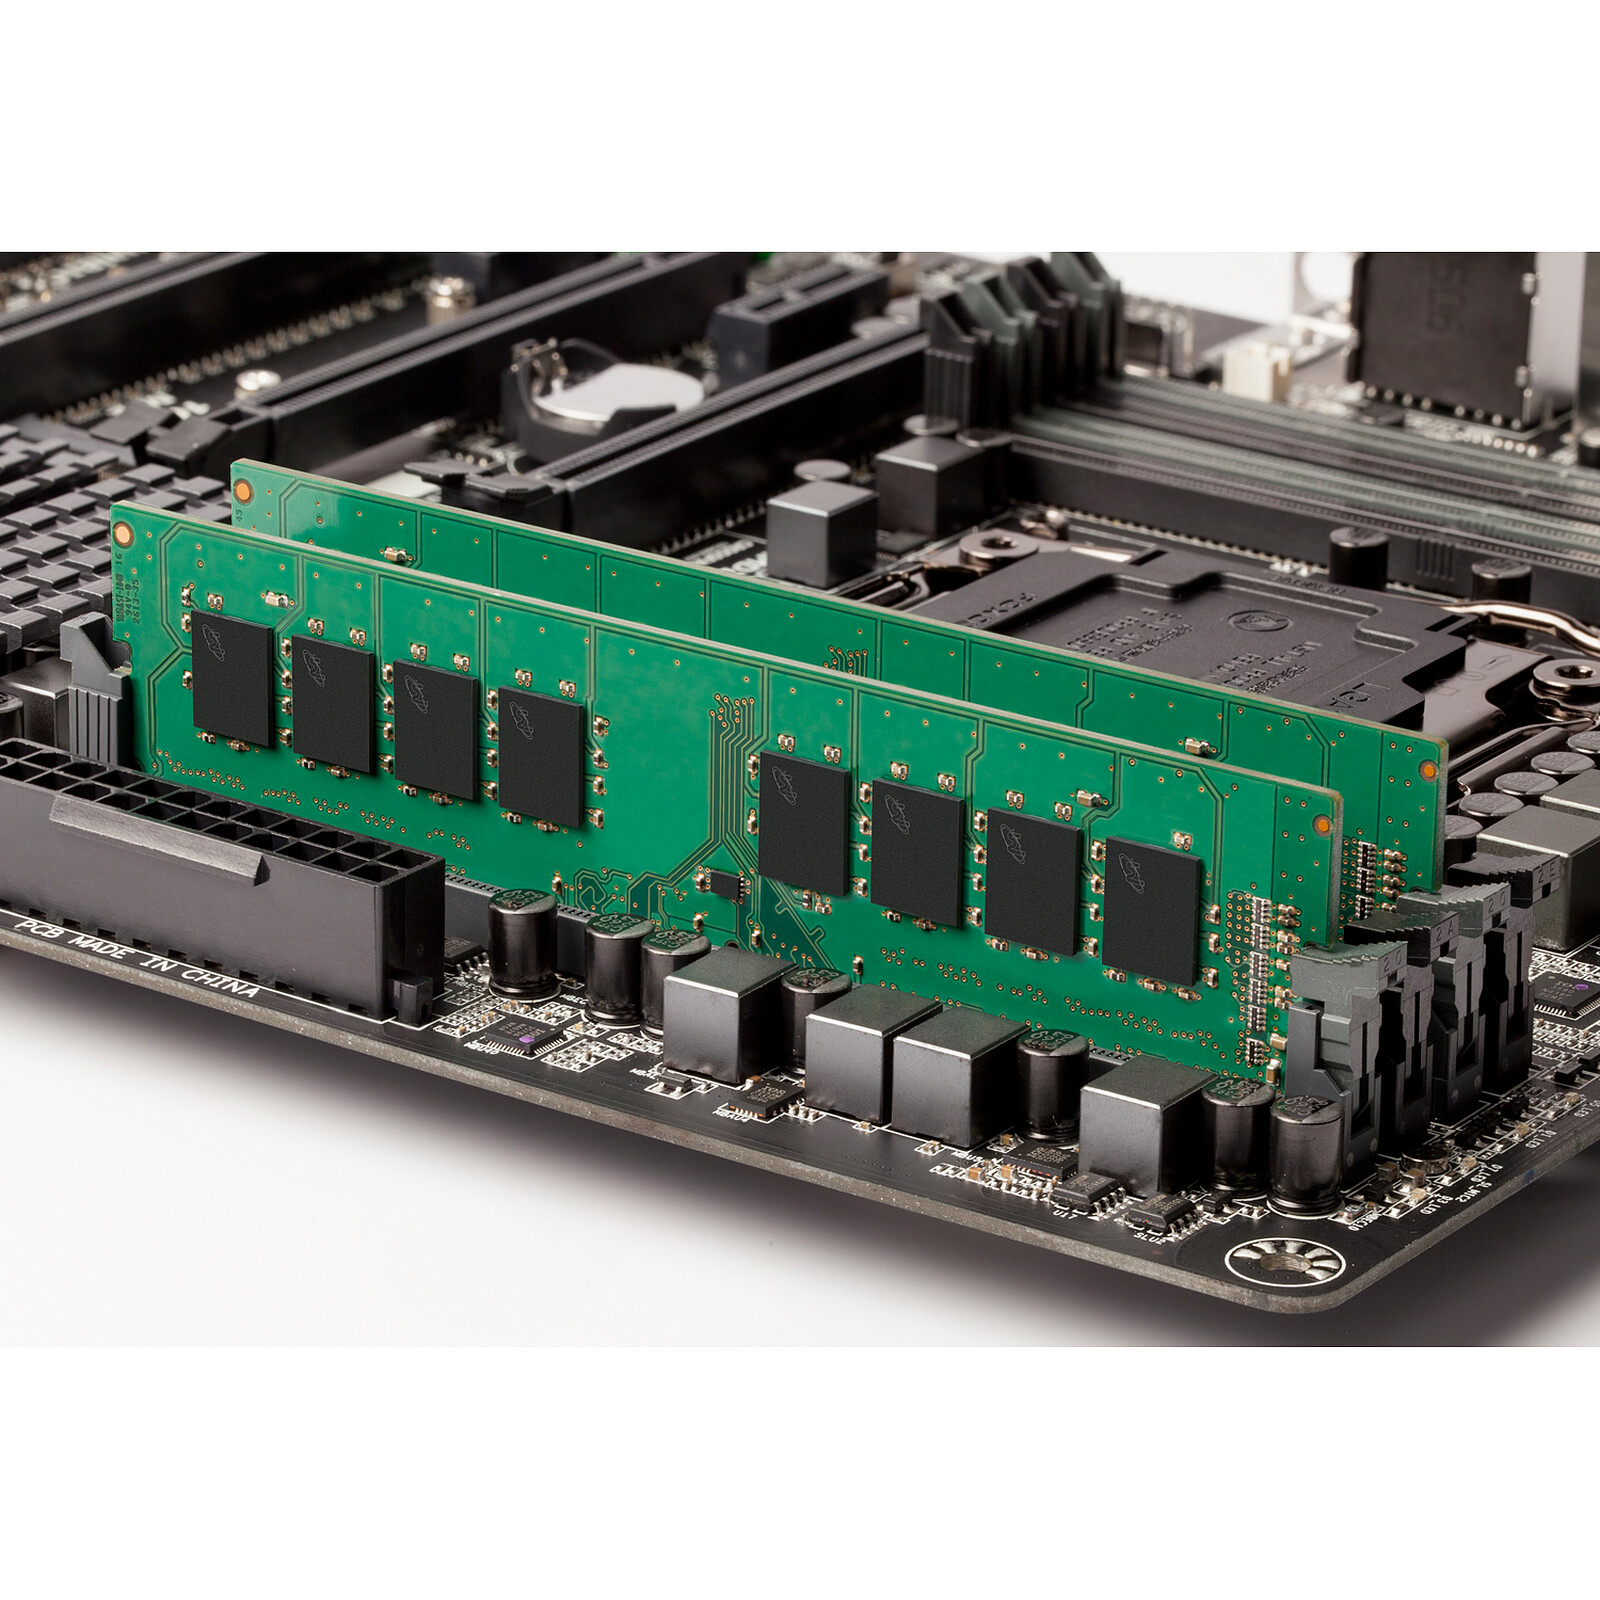 Ram 8Go DDR4 2400 Speed - Marque Crucial Barrettte de Mémoire Vive Pour  Ordinateur de Bureau MM00137 - Sodishop